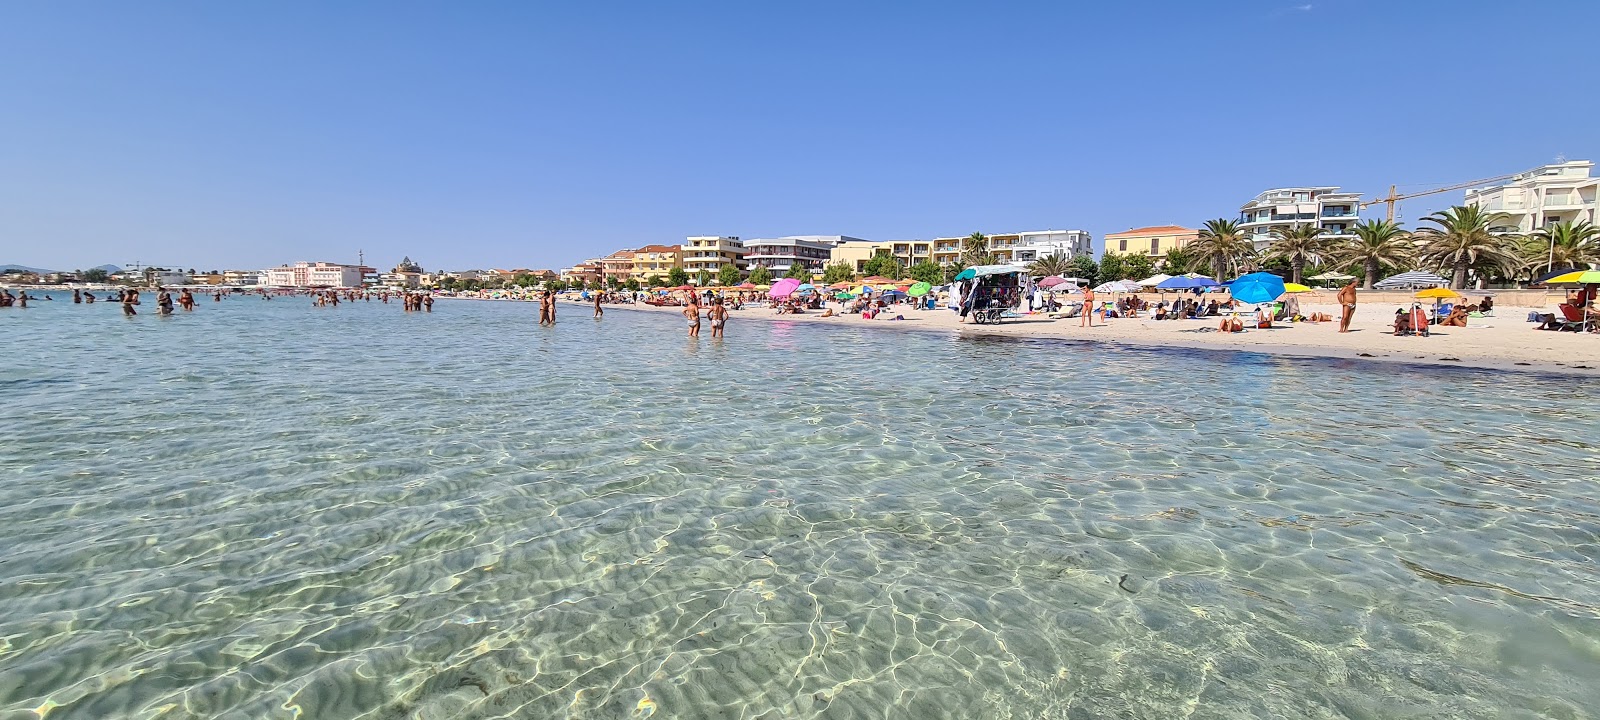 Foto de Playa de Lido di Alghero con parcialmente limpio nivel de limpieza